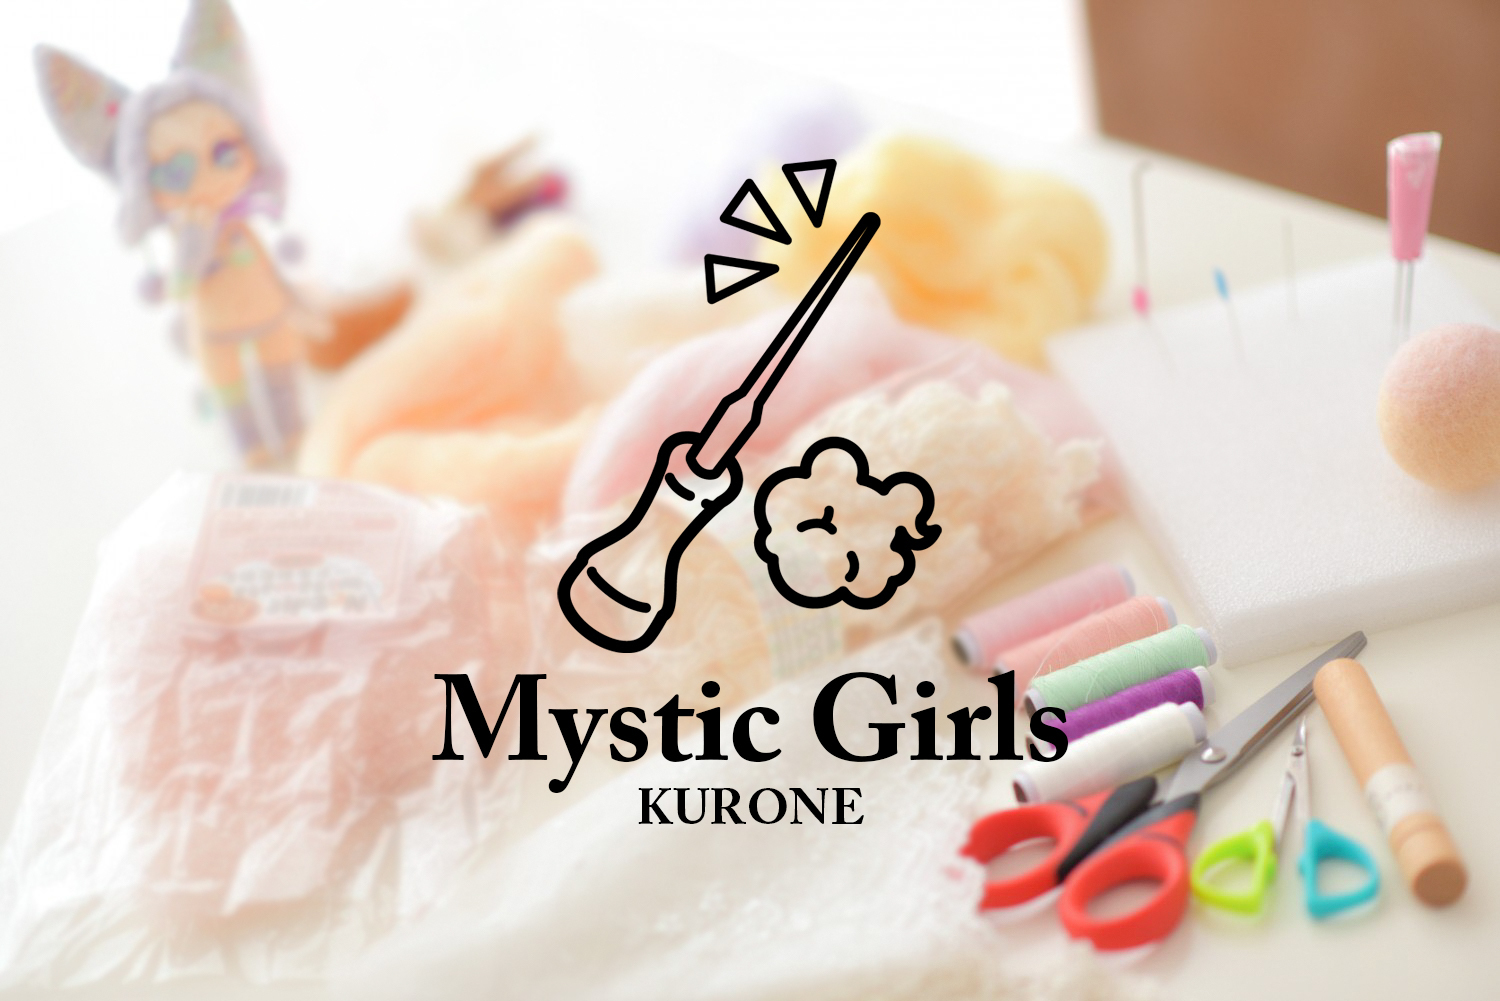 kurone Mystic Girls